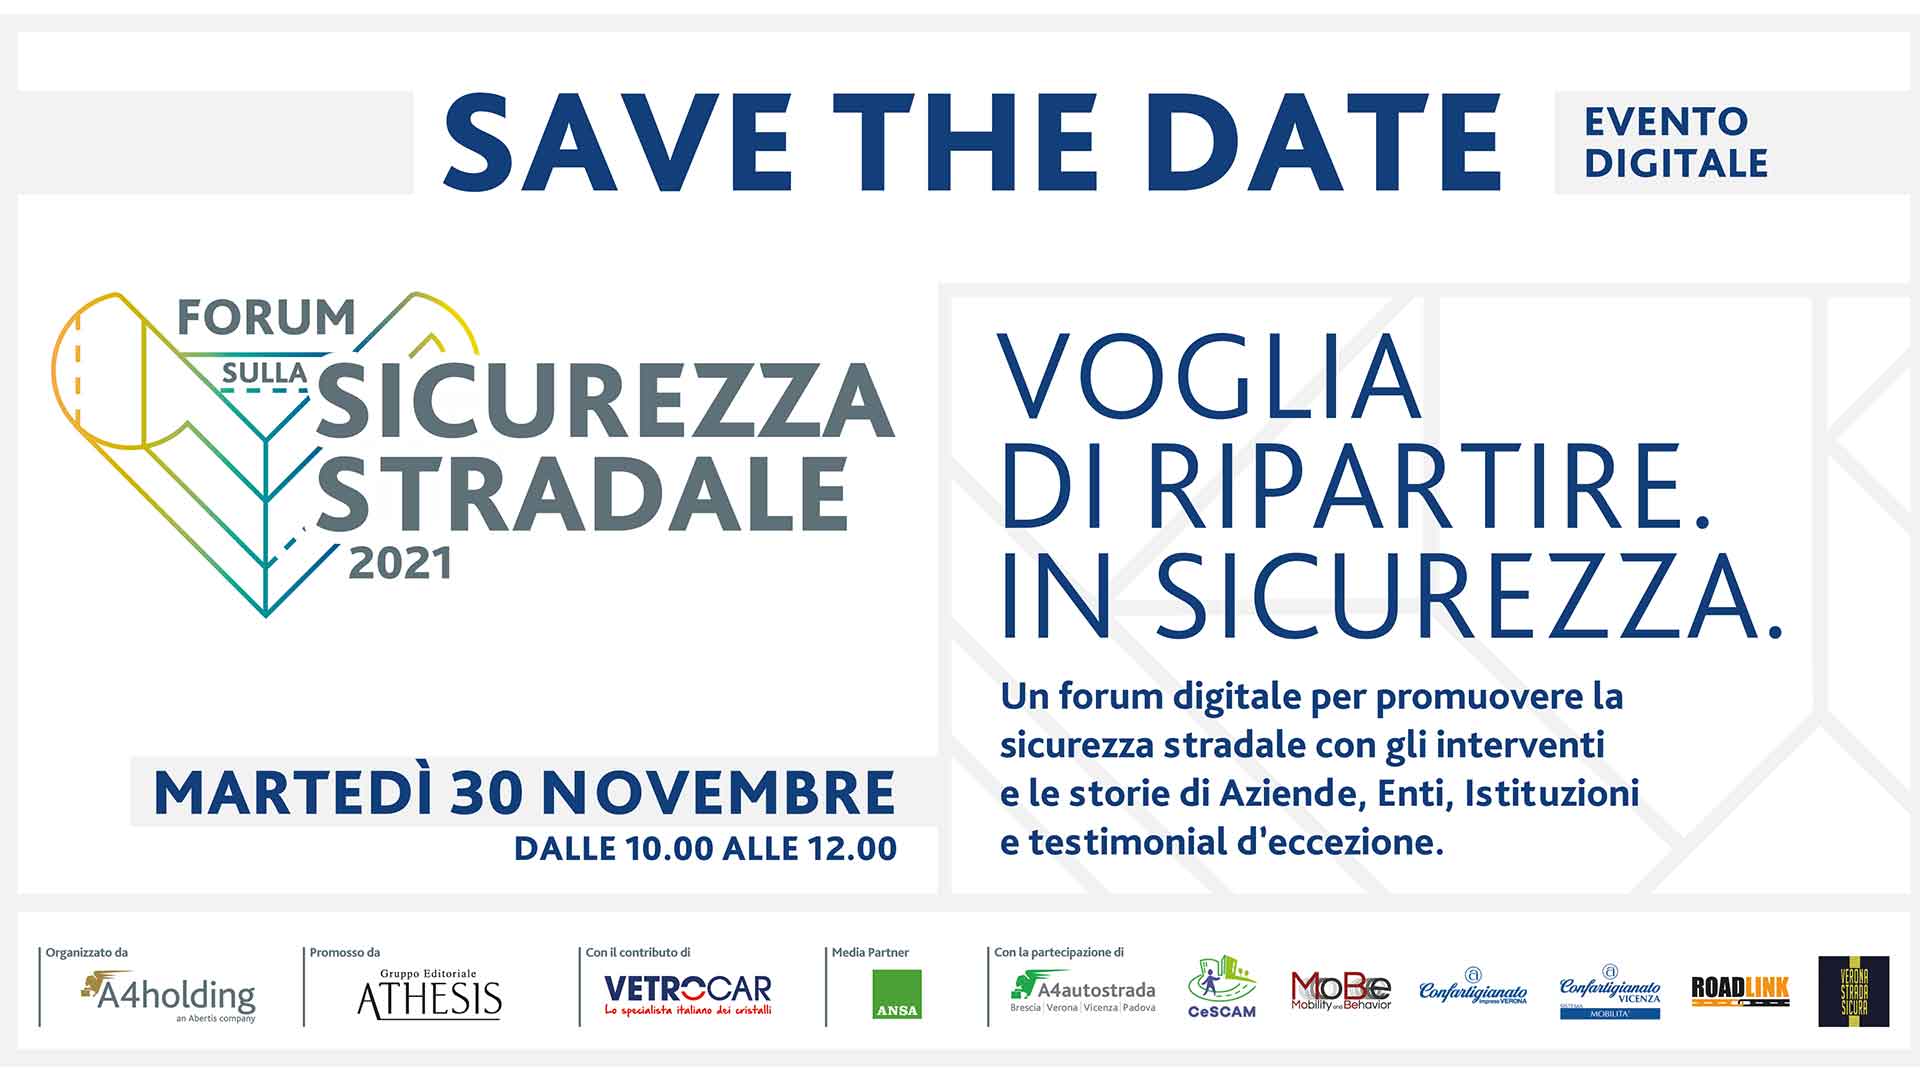 SICUREZZA STRADALE – Forum Sicurezza Stradale di A4 Holding e Athesis: evento digitale per promuovere la sicurezza sulle strade, con Confartigianato Verona e Vicenza